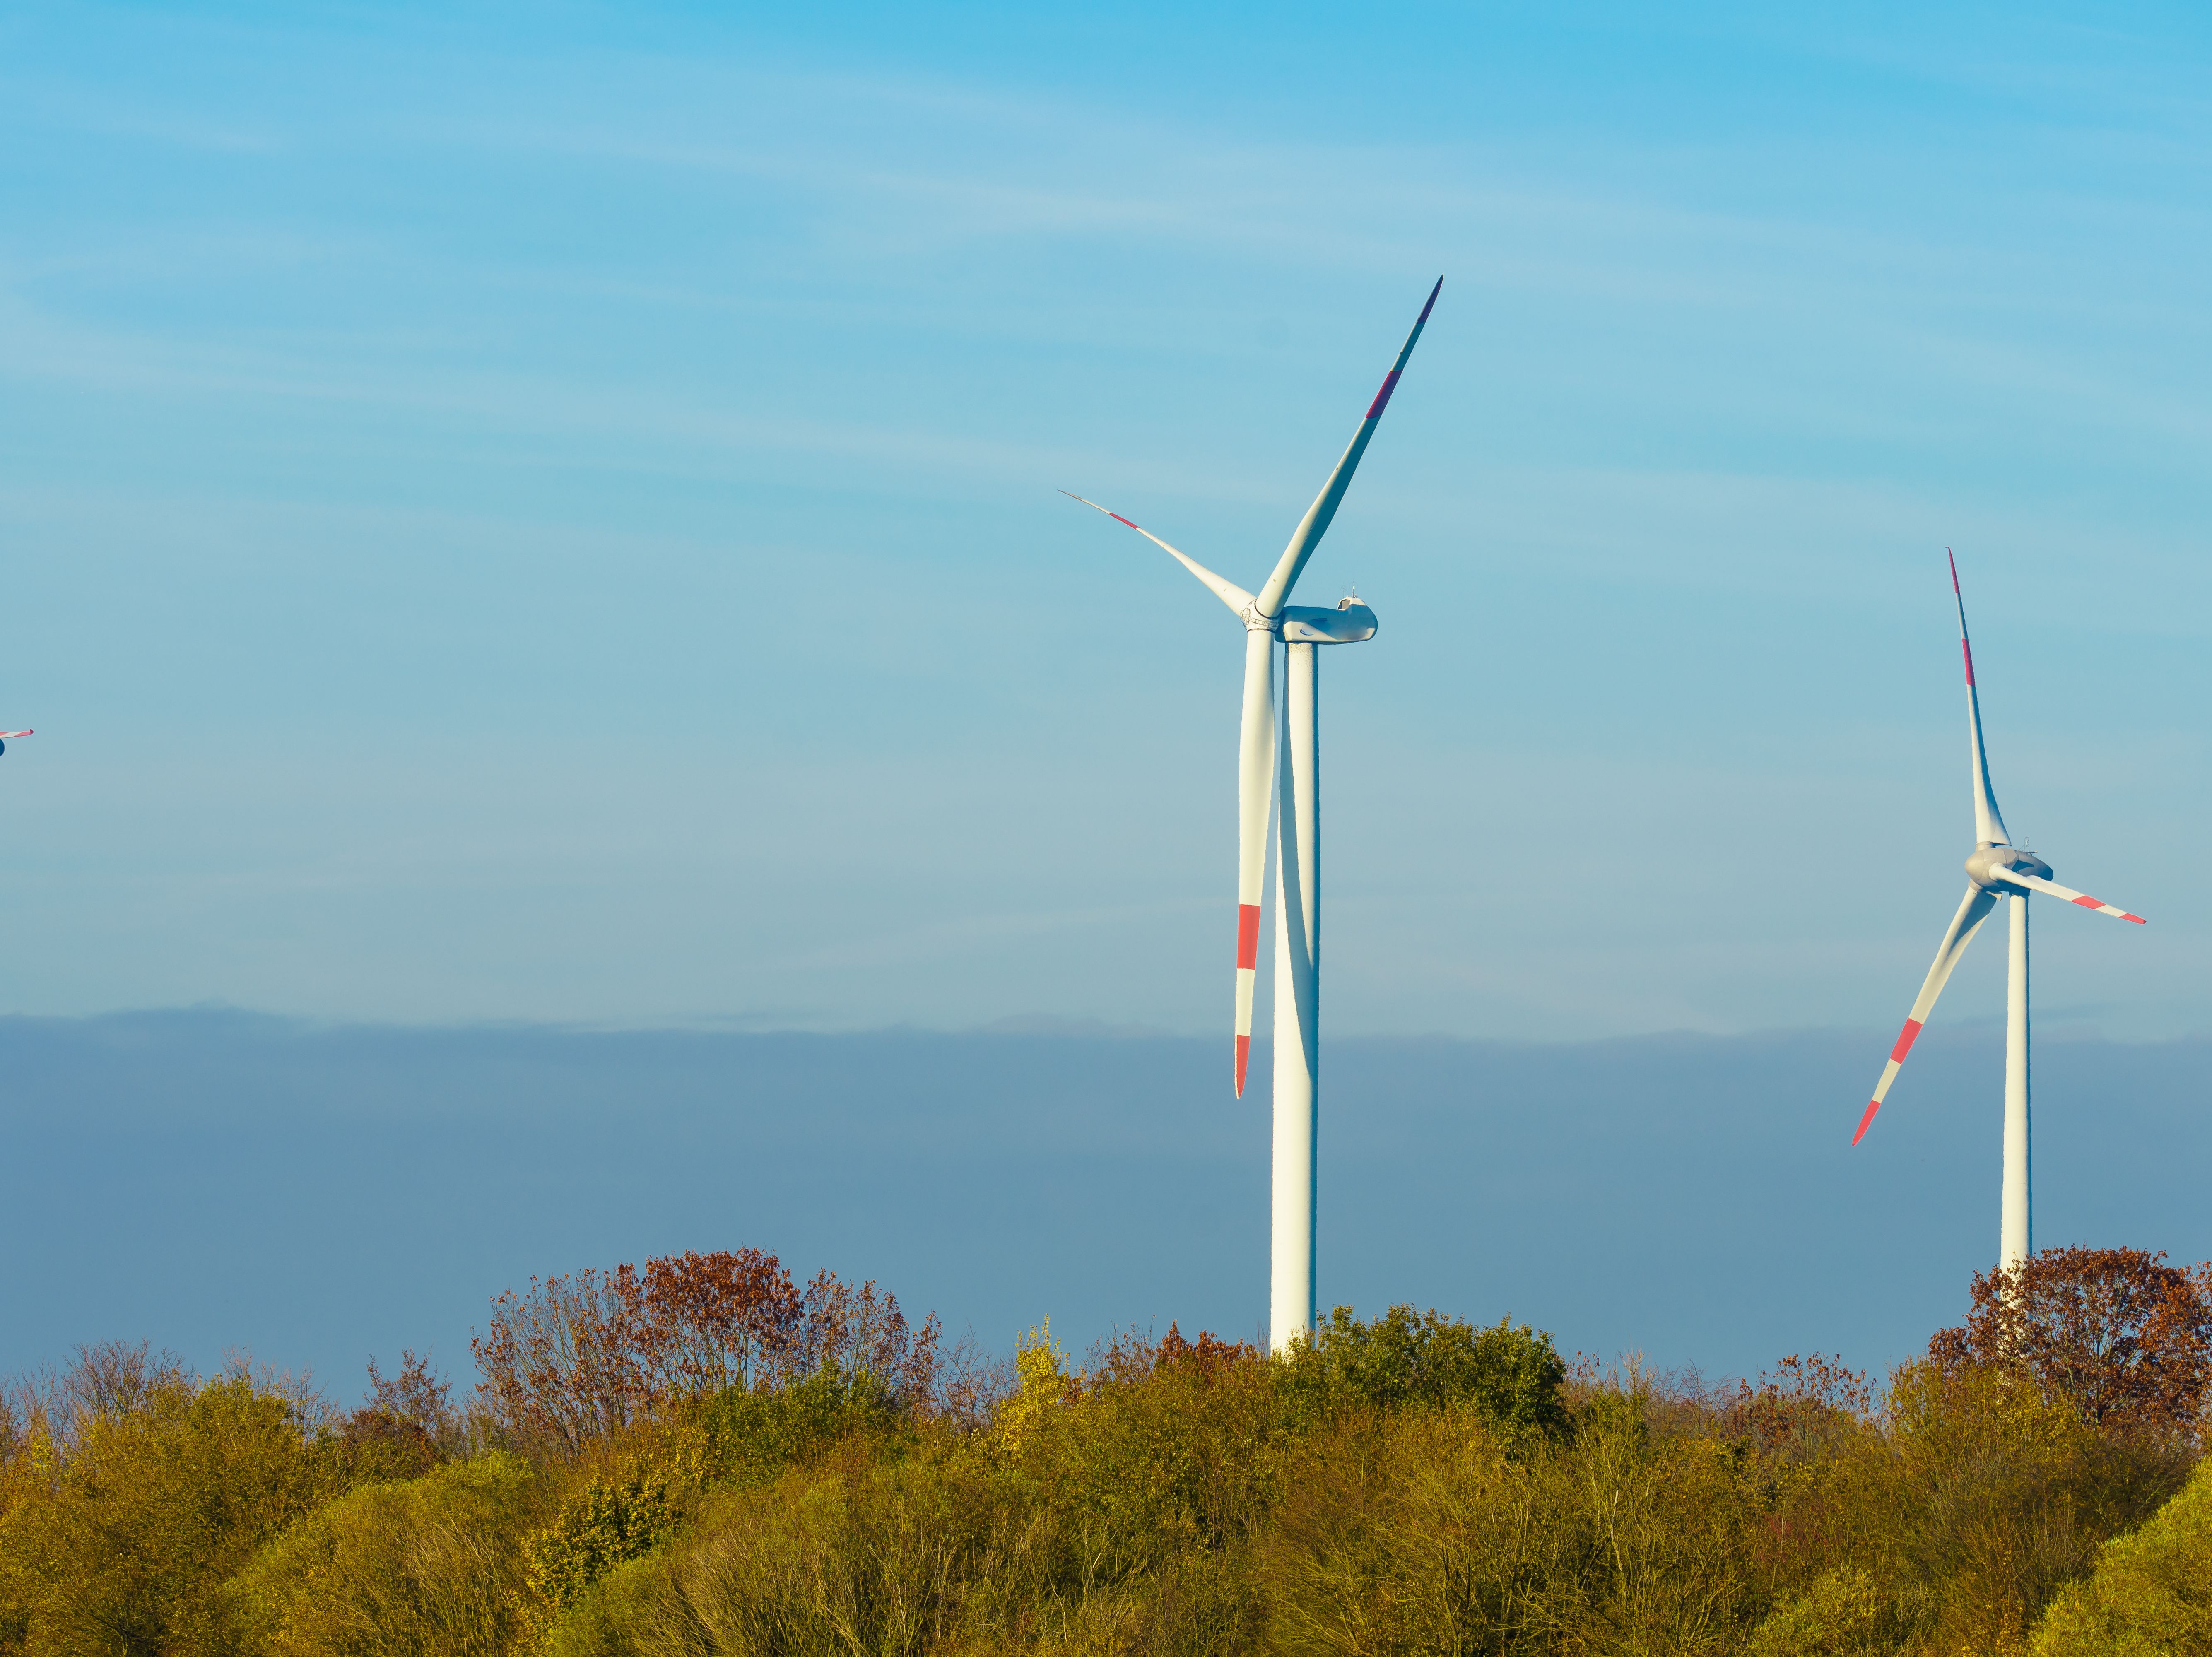 Windmills Wind Turbines Farm Power Generators Pro 2022 01 04 20 17 46 Utc